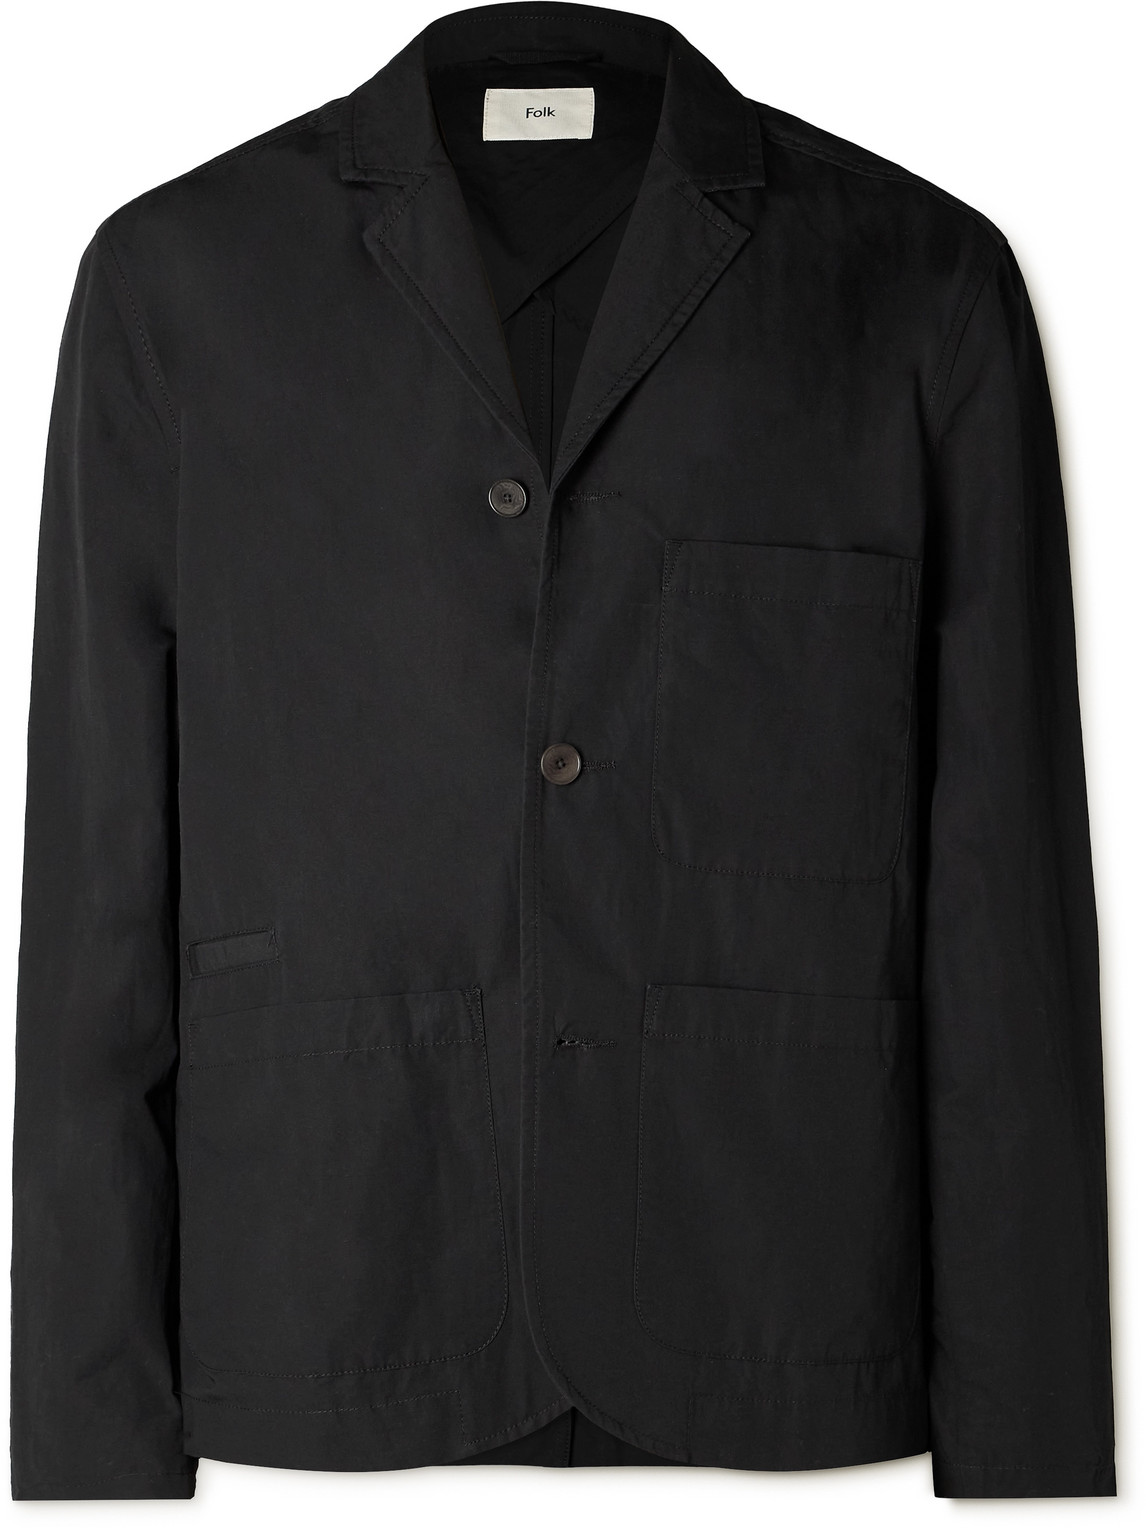 Folk Unstructured Garment-dyed Cotton Blazer In Black